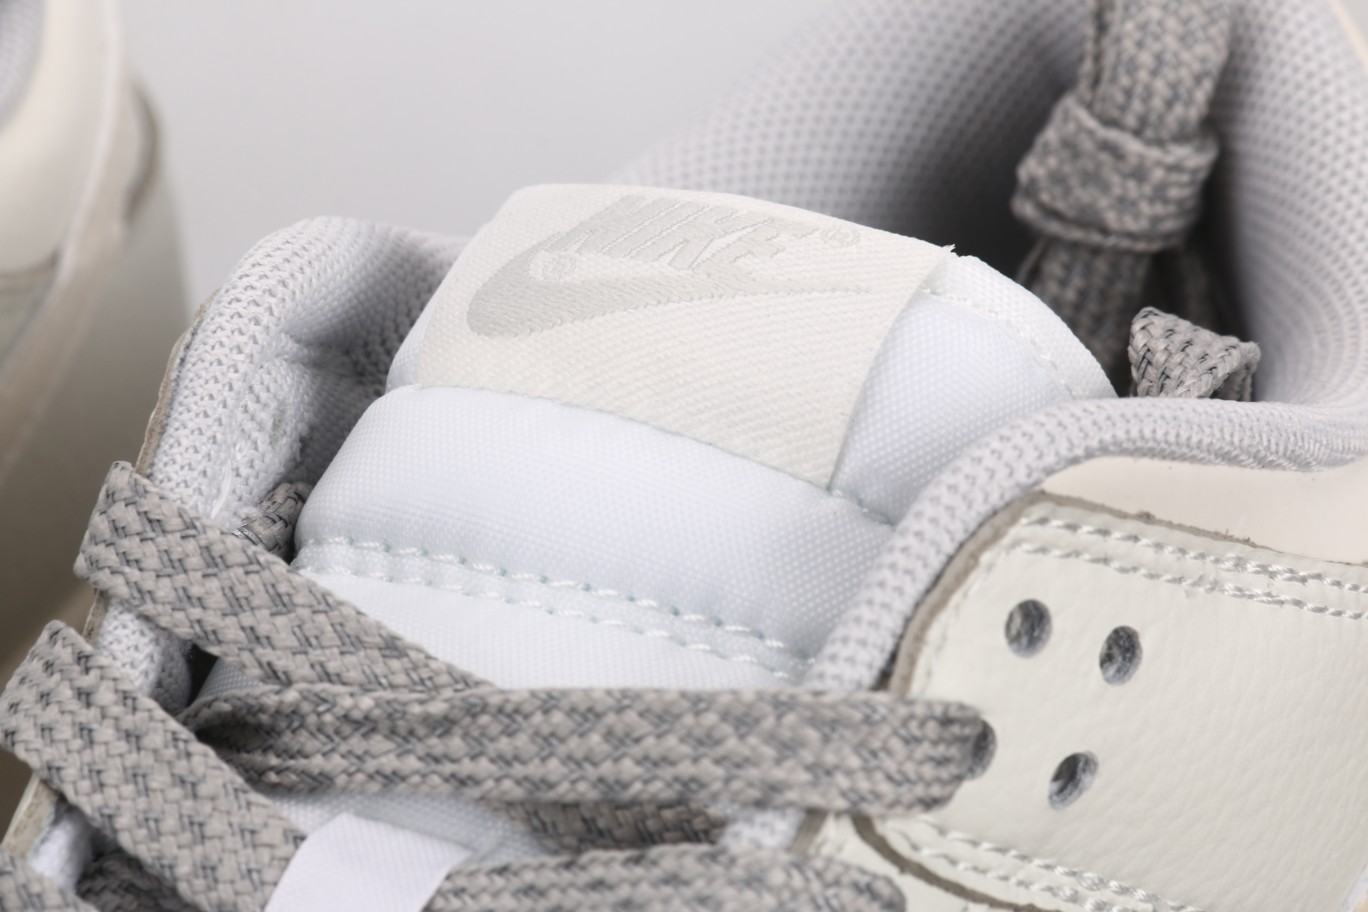 NikeDunkLow珠光灰此款鞋采用近几年比较流行的版型设计外观时尚大气鞋底采用耐磨的材质穿上它让您在